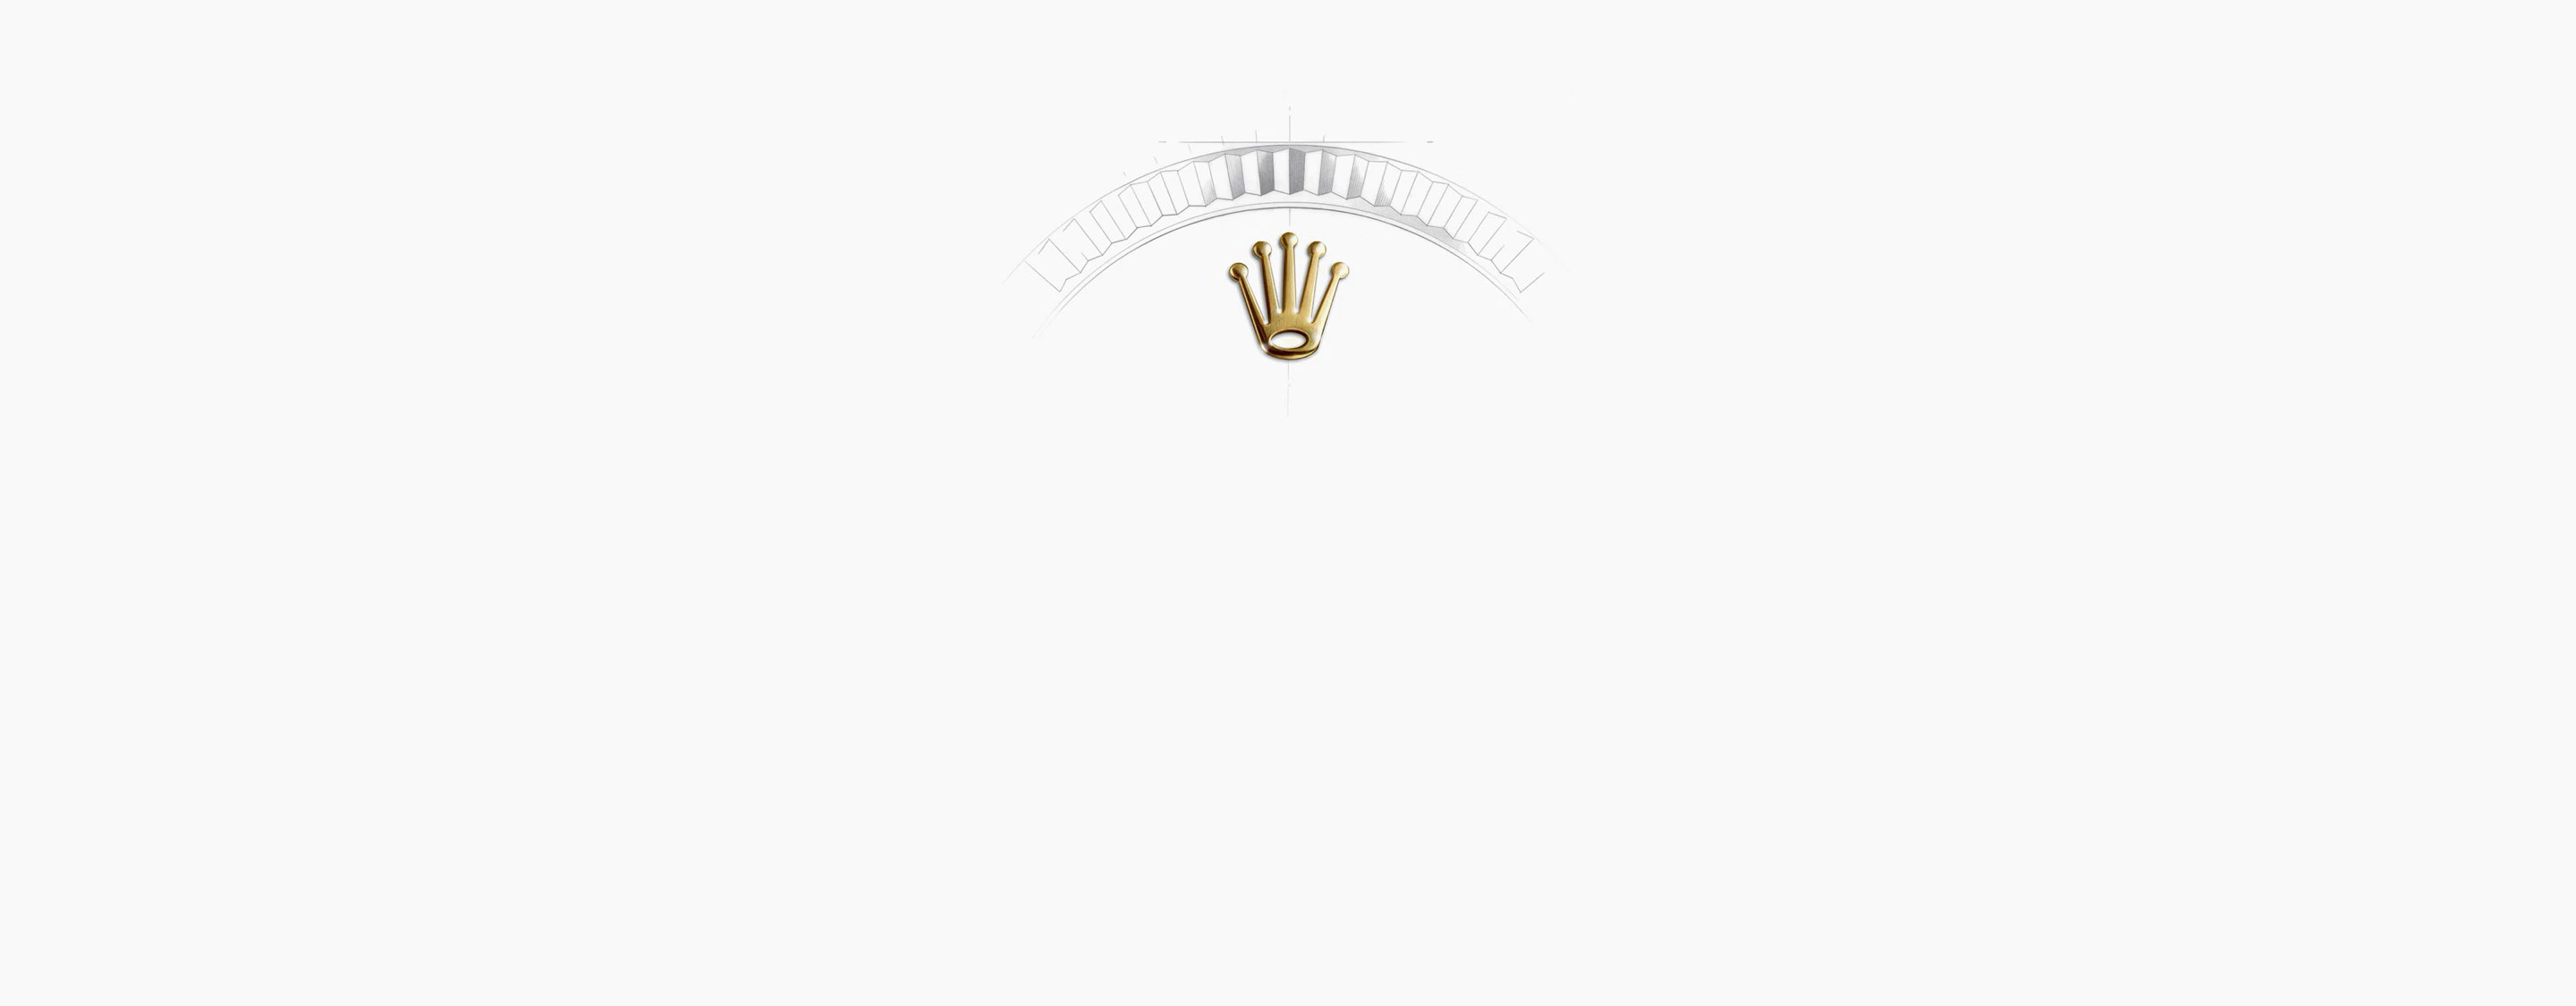 Corona Reloj Rolex Day-Date oro Blanco en Relojería Alemana